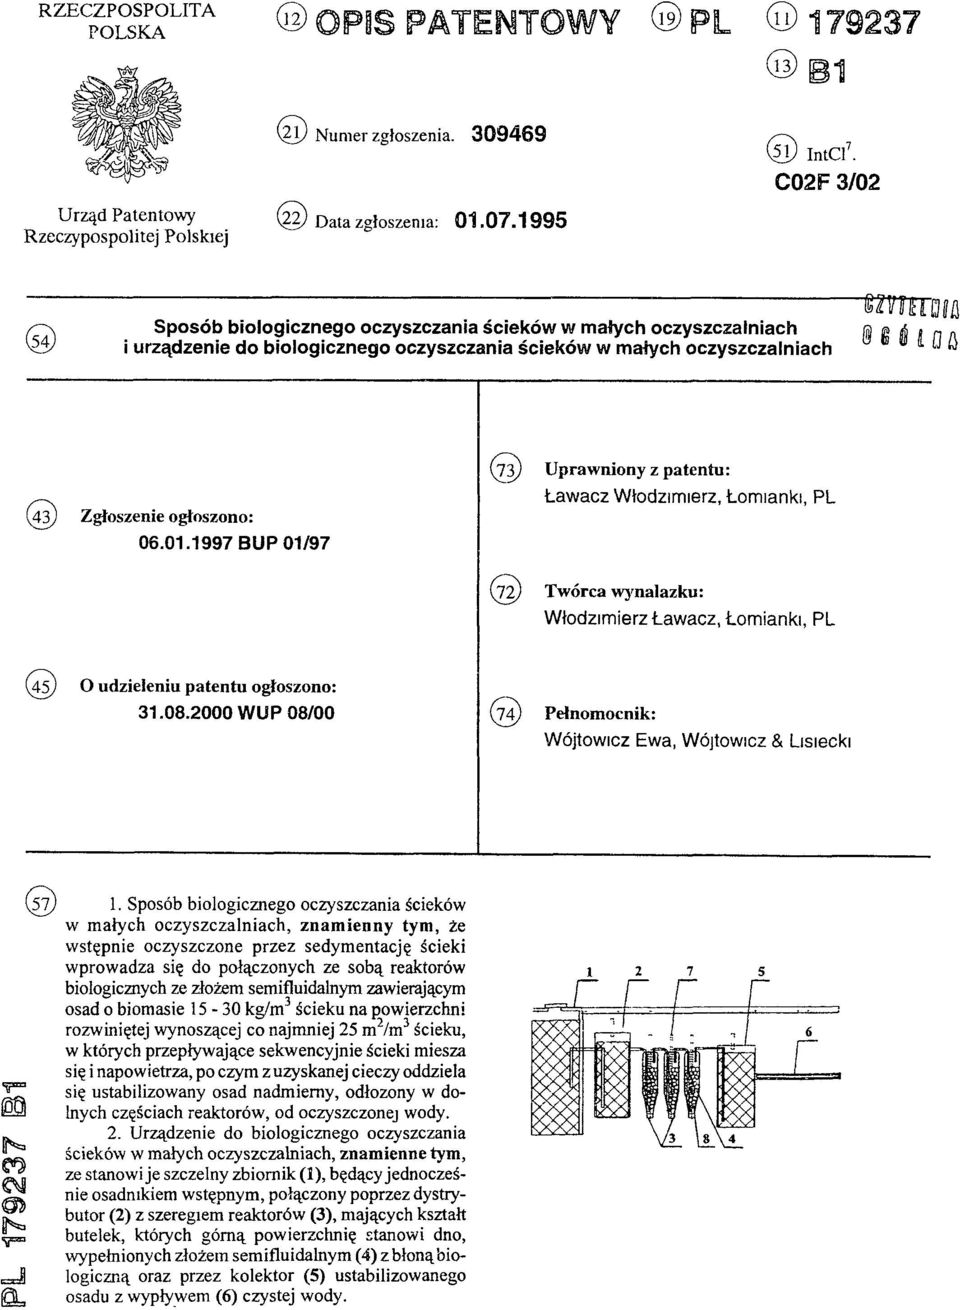 1997 BUP 01/97 (73) U praw niony z patentu: Ławacz Włodzimierz, Łomianki, PL (72) Tw órca wynalazku: Włodzimierz Ławacz, Łomianki, PL (45) O udzieleniu patentu ogłoszono: 31.08.